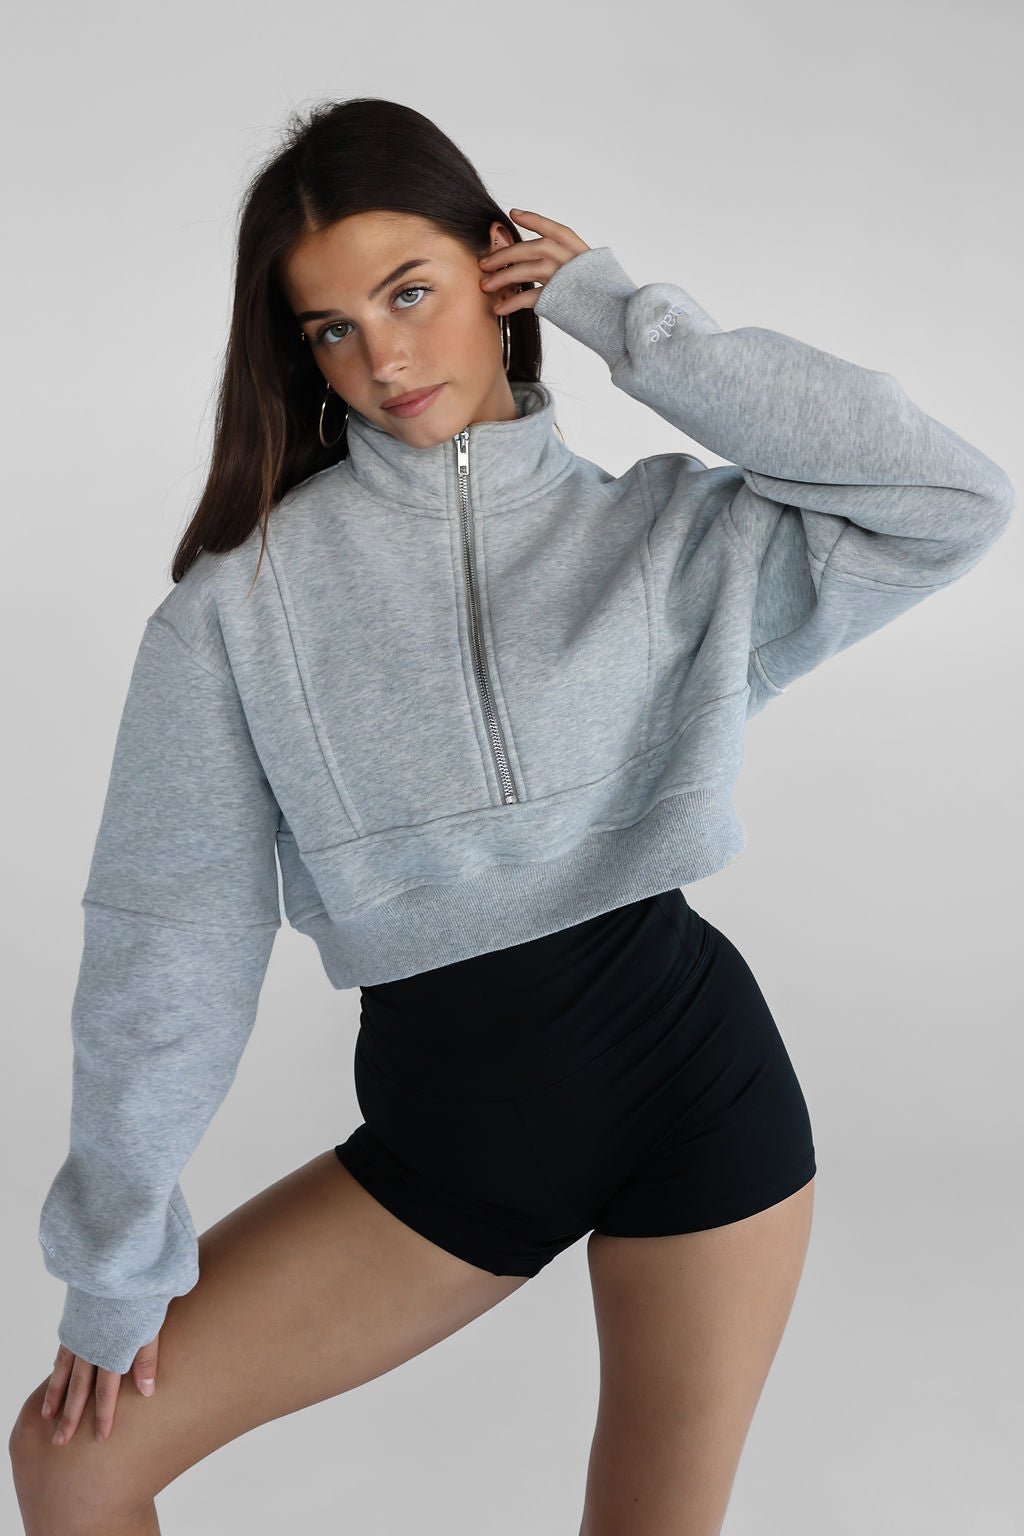 Half Zip Cropped Sweater - Marl Grey - LEELO ACTIVE